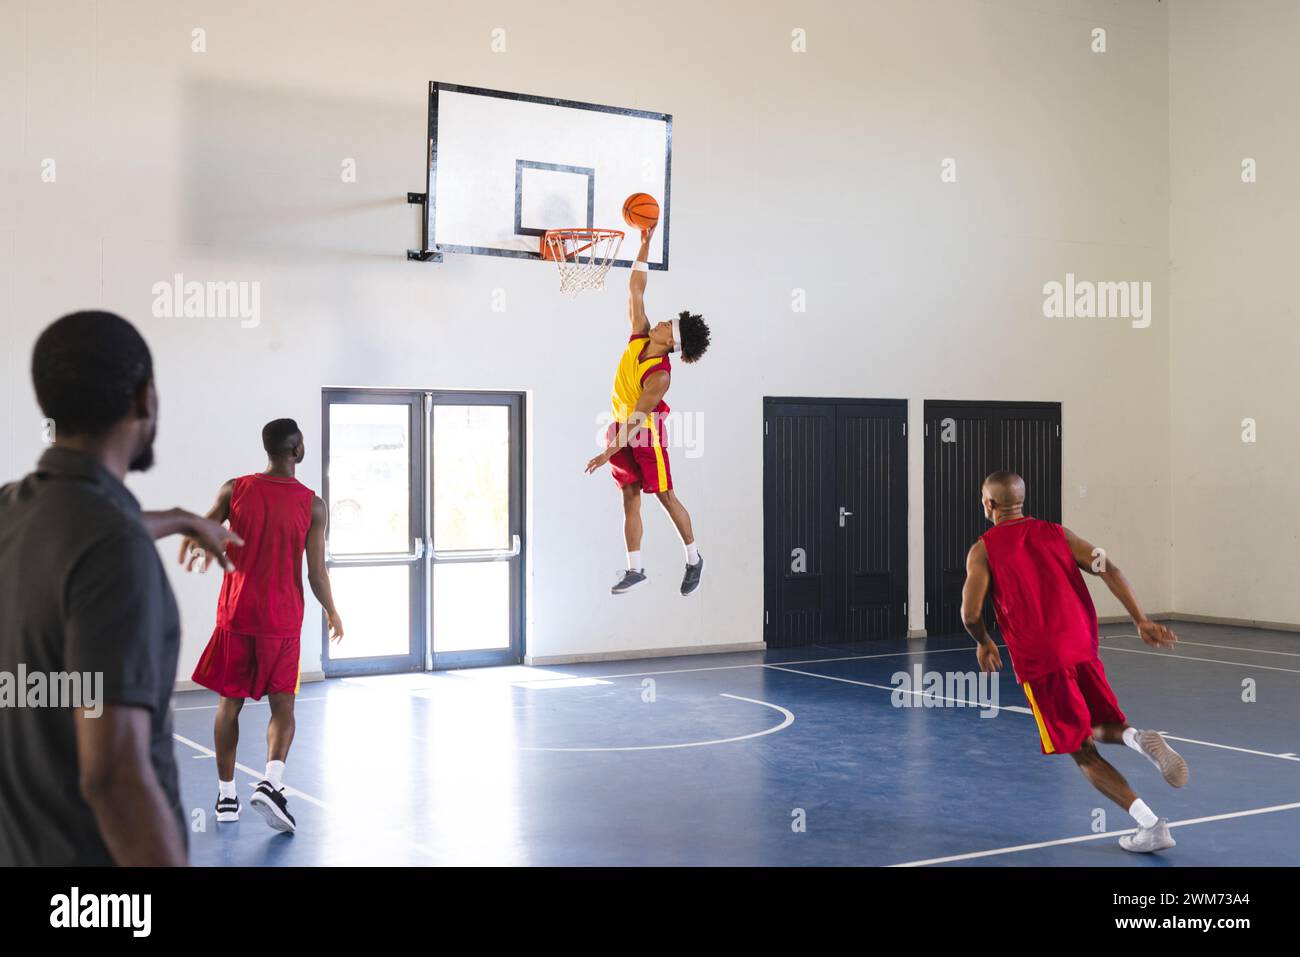 Jeune homme afro-américain saute pour un slam dunk dans un match de basket-ball dans une salle de gym Banque D'Images